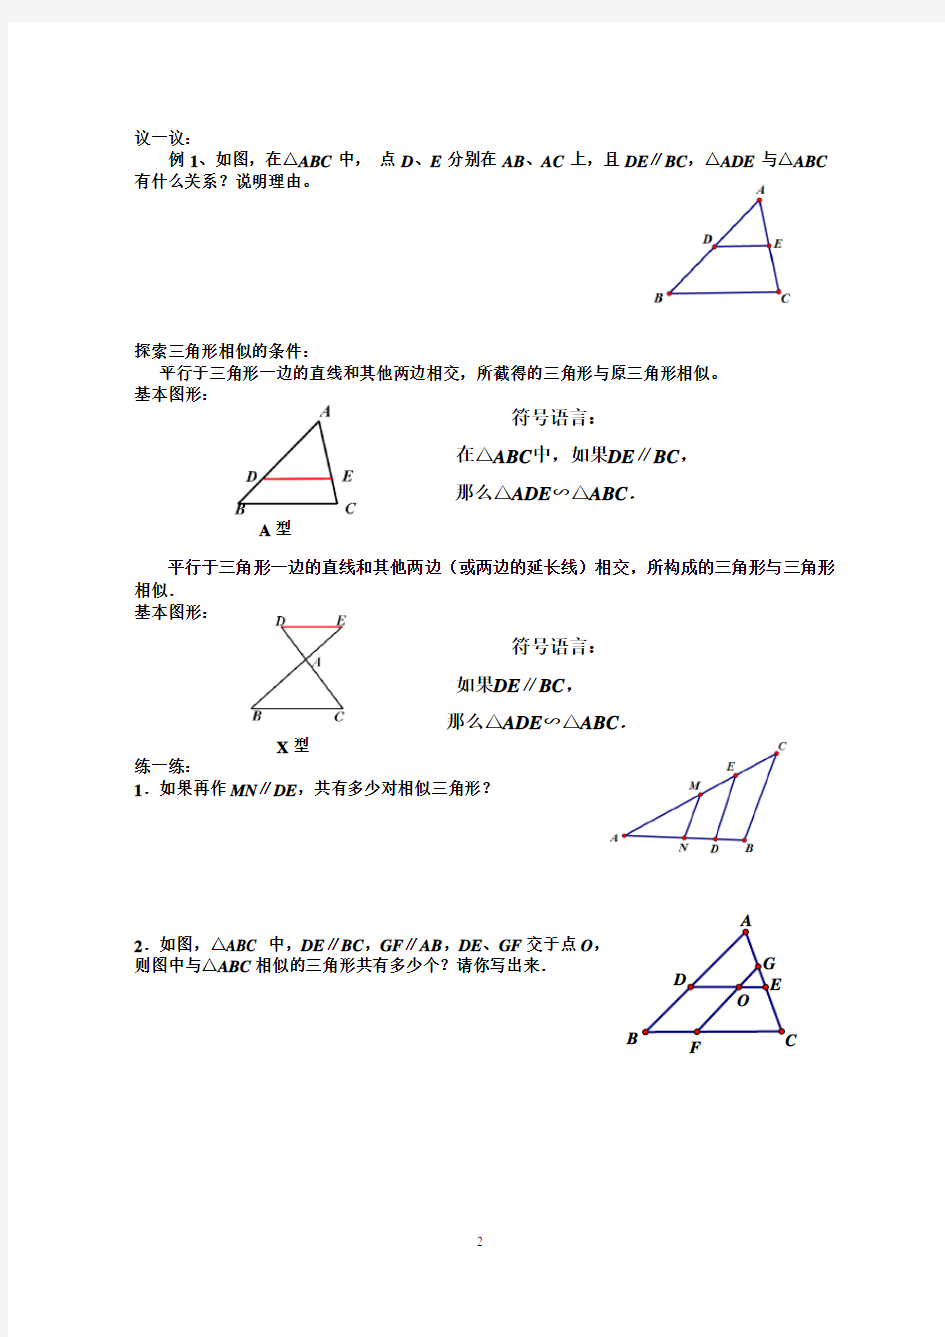 6.4探索三角形相似的条件(1)